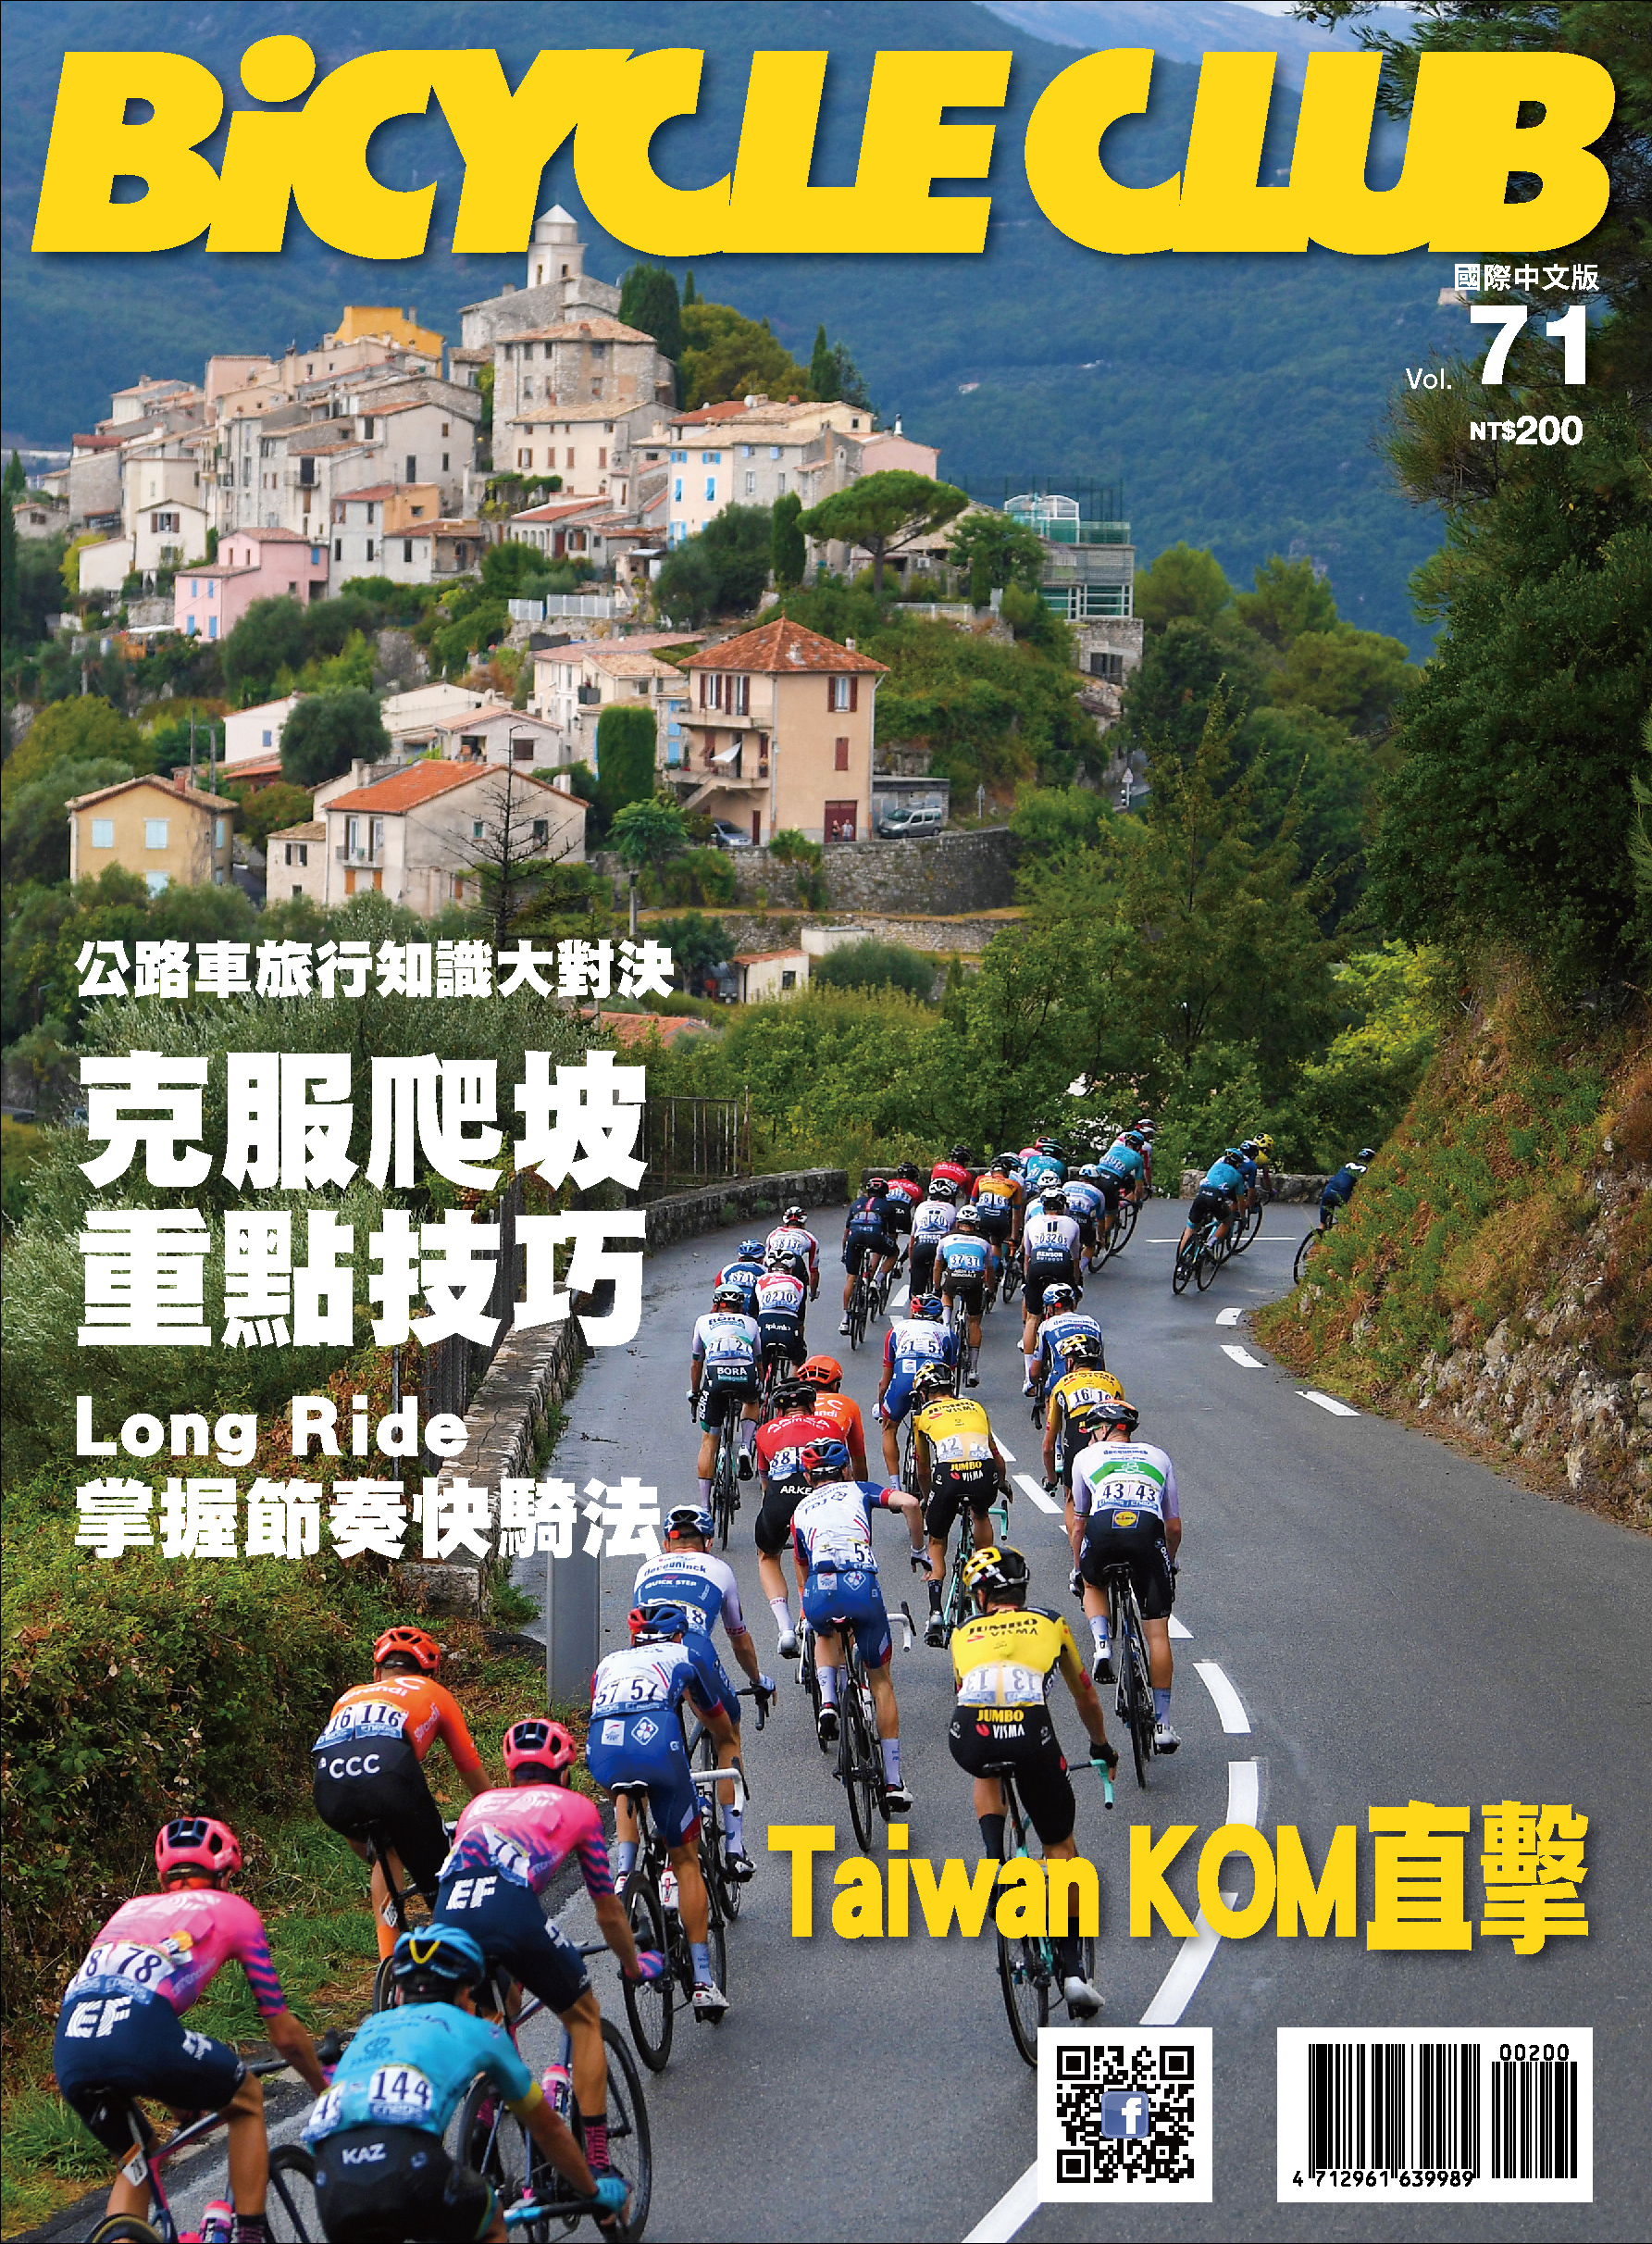 BiCYCLE CLUB 國際中文版 Vol.71